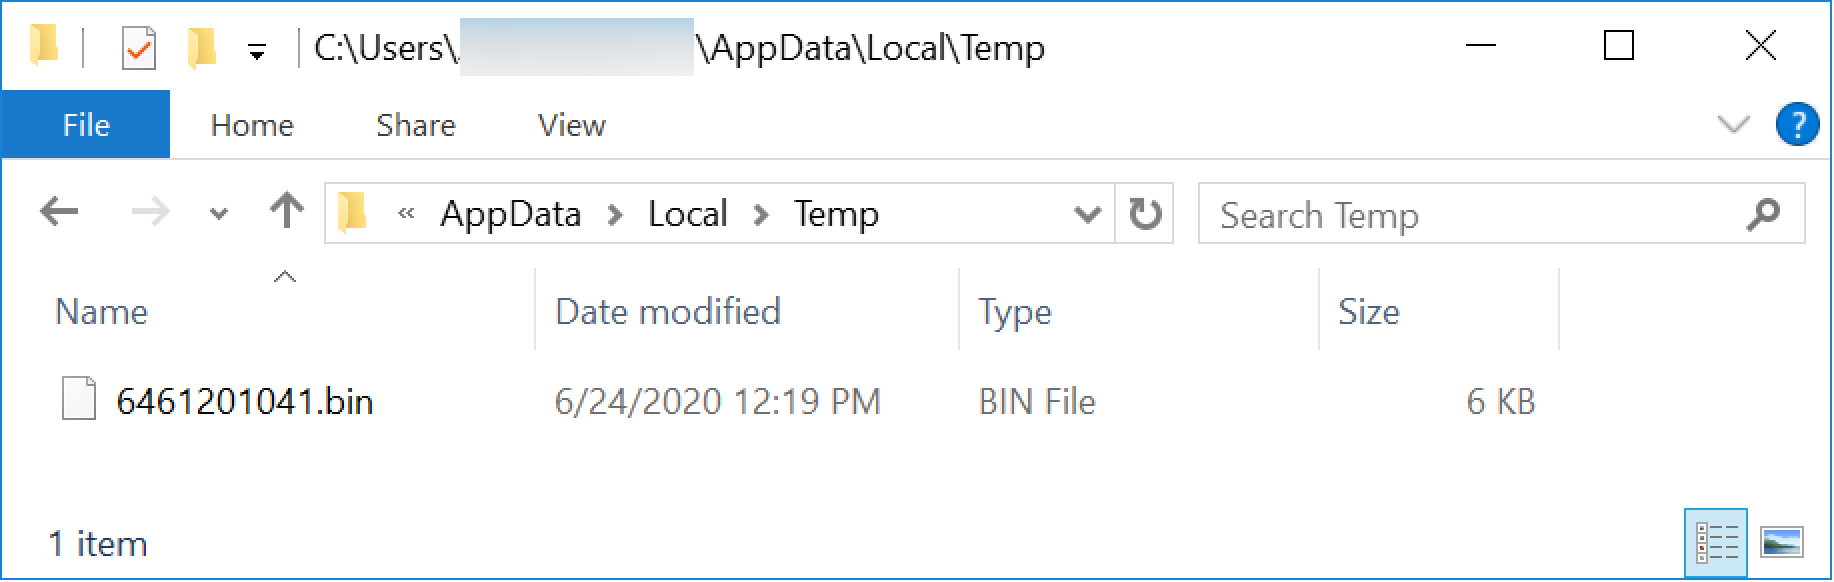 .binで終わるランダムなファイル名として、感染したユーザーのAppData\Local\Tempディレクトリに、Windows実行可能ファイルが作成されます。